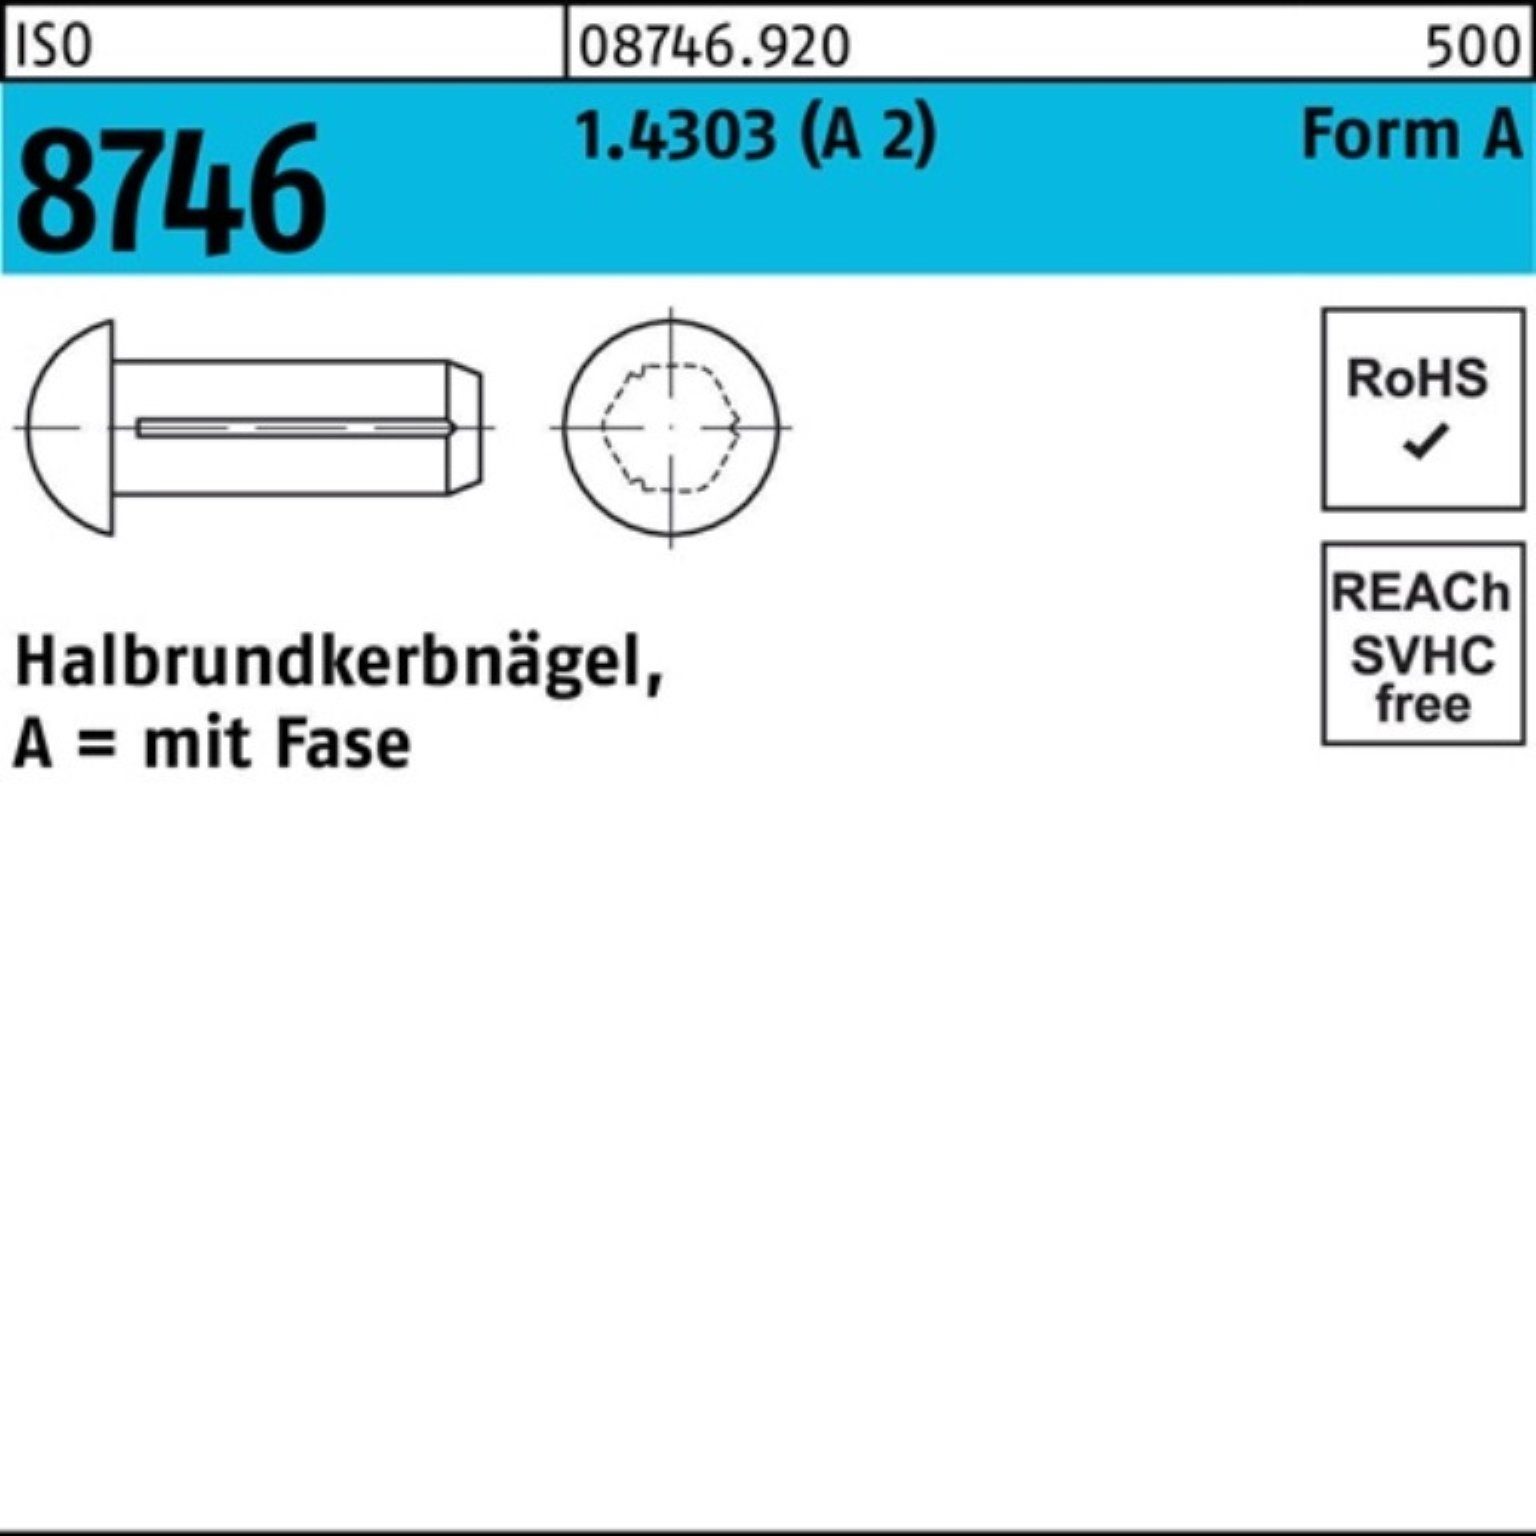 8746 Stüc Fase Pack 4 100er Reyher Nagel 3x ISO (A Halbrundkerbnagel 100 1.4303 2)